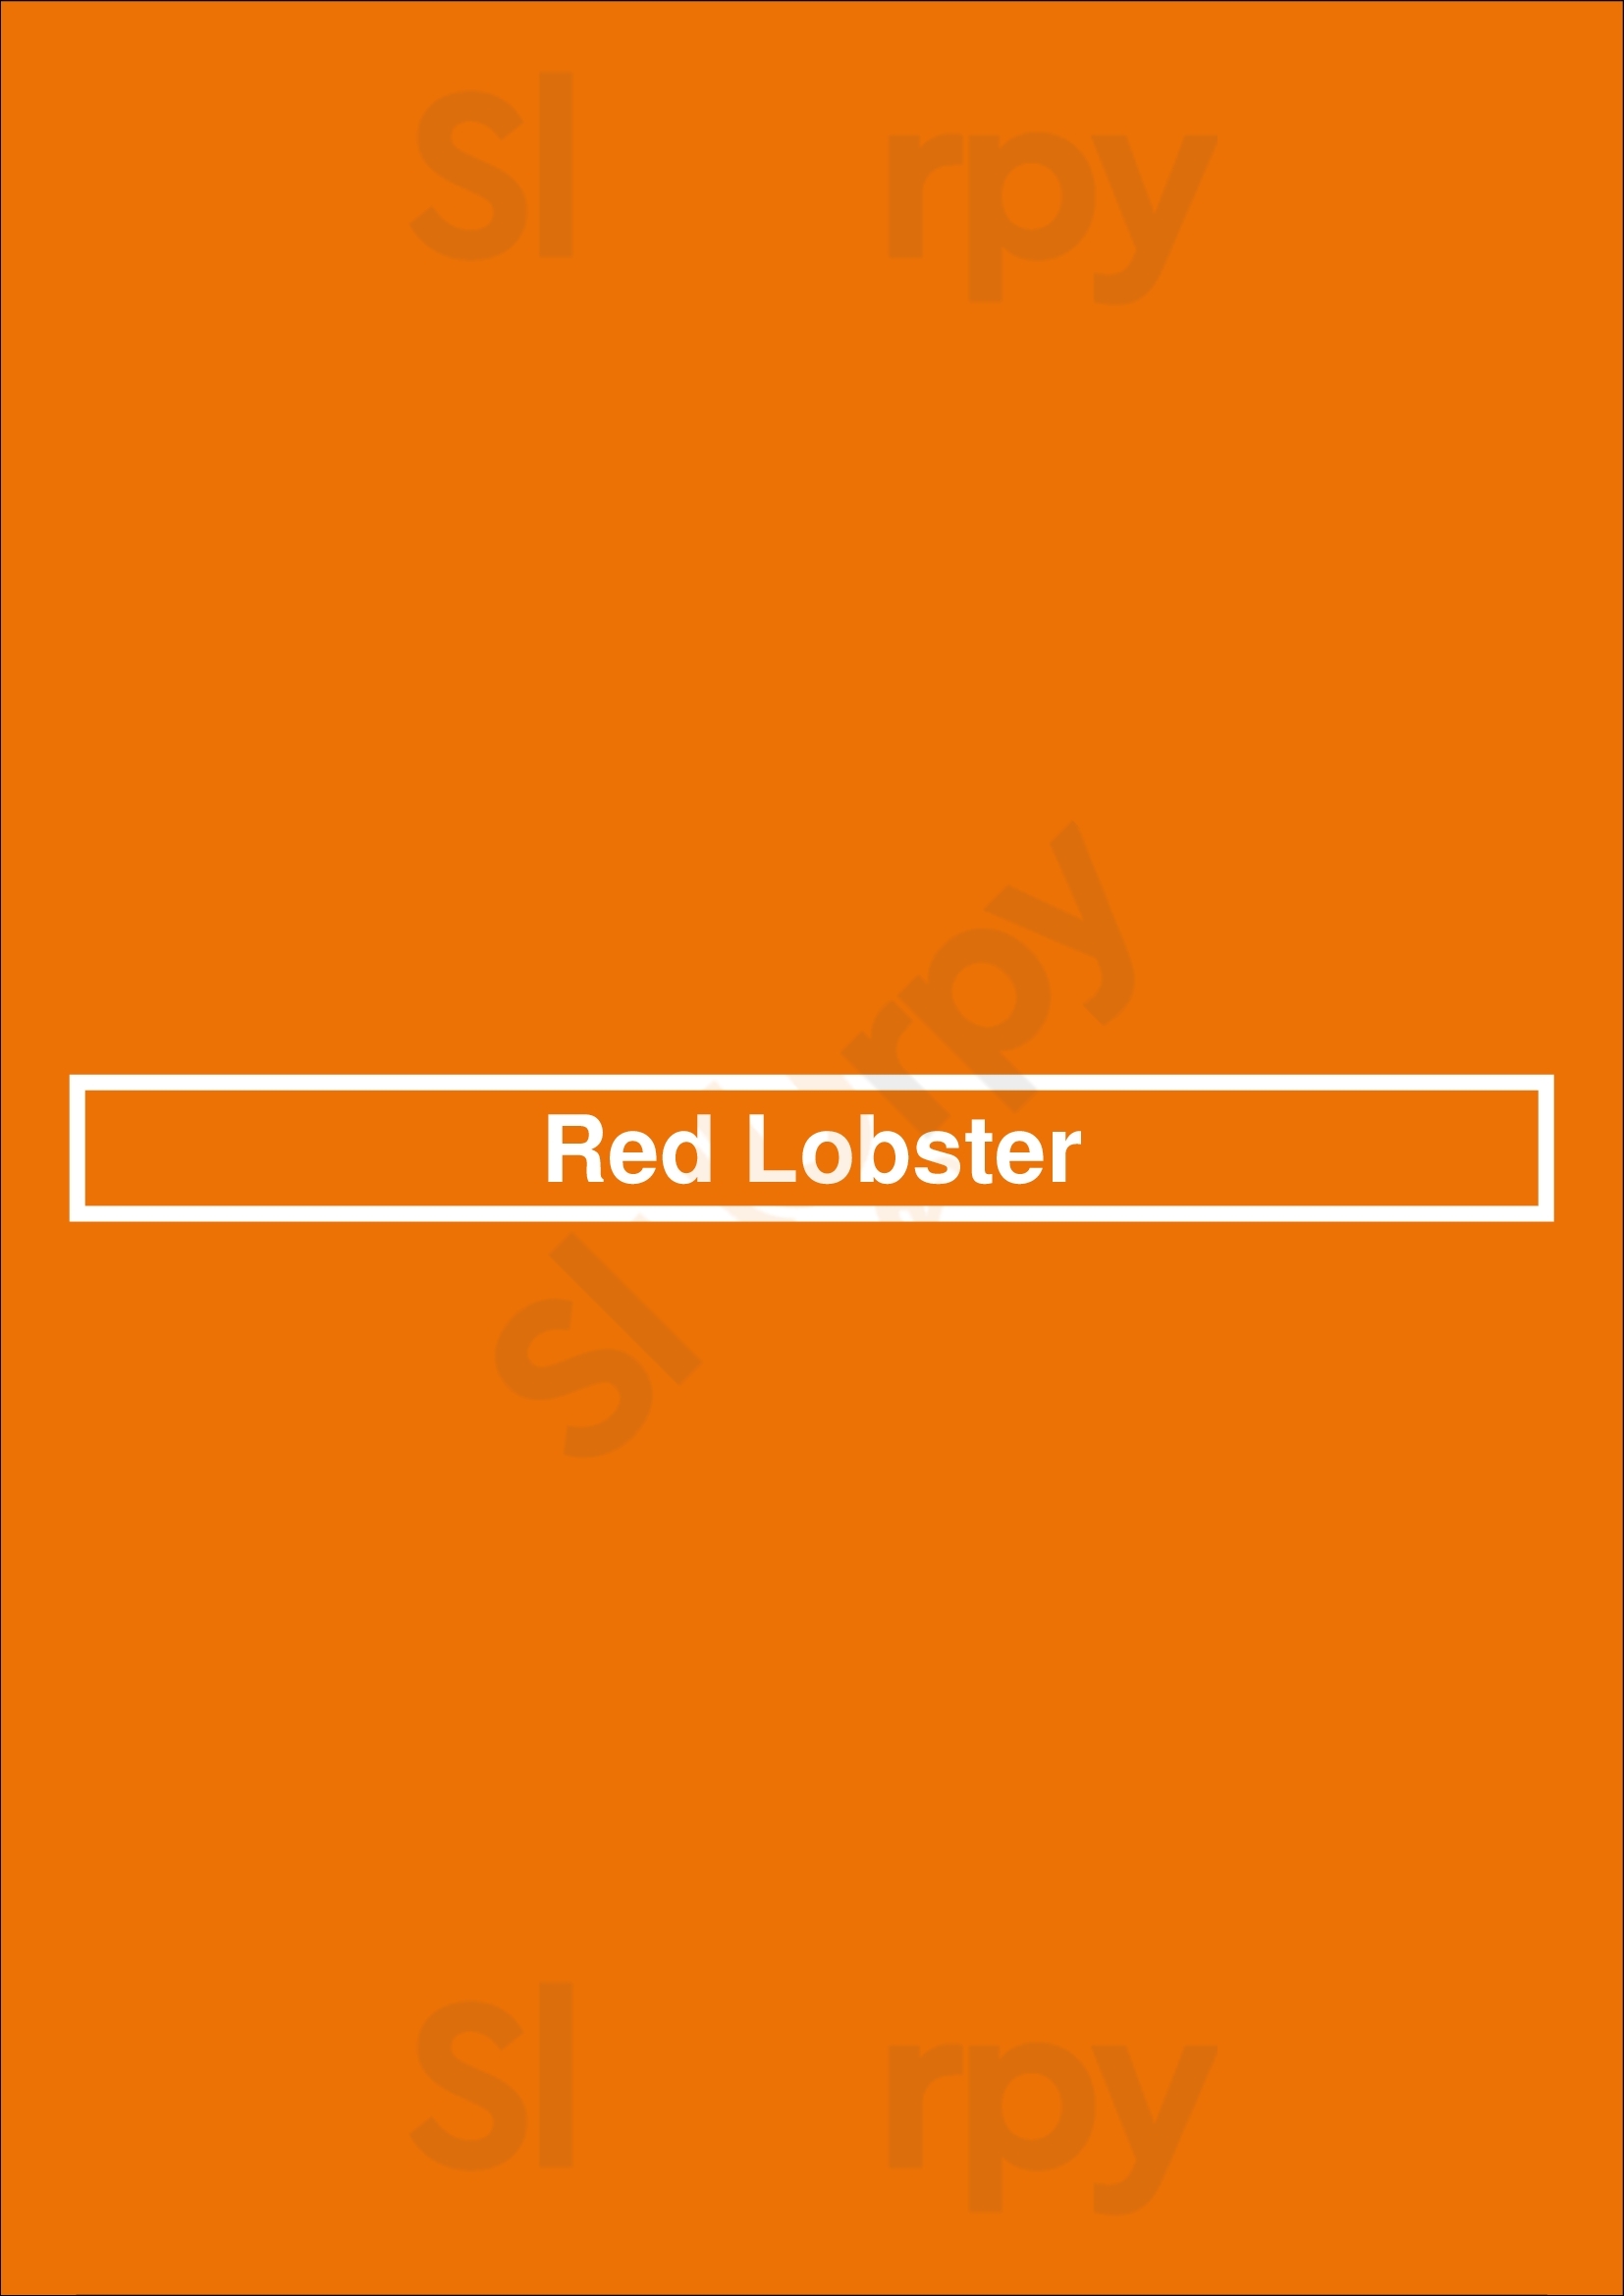 Red Lobster Omaha Menu - 1